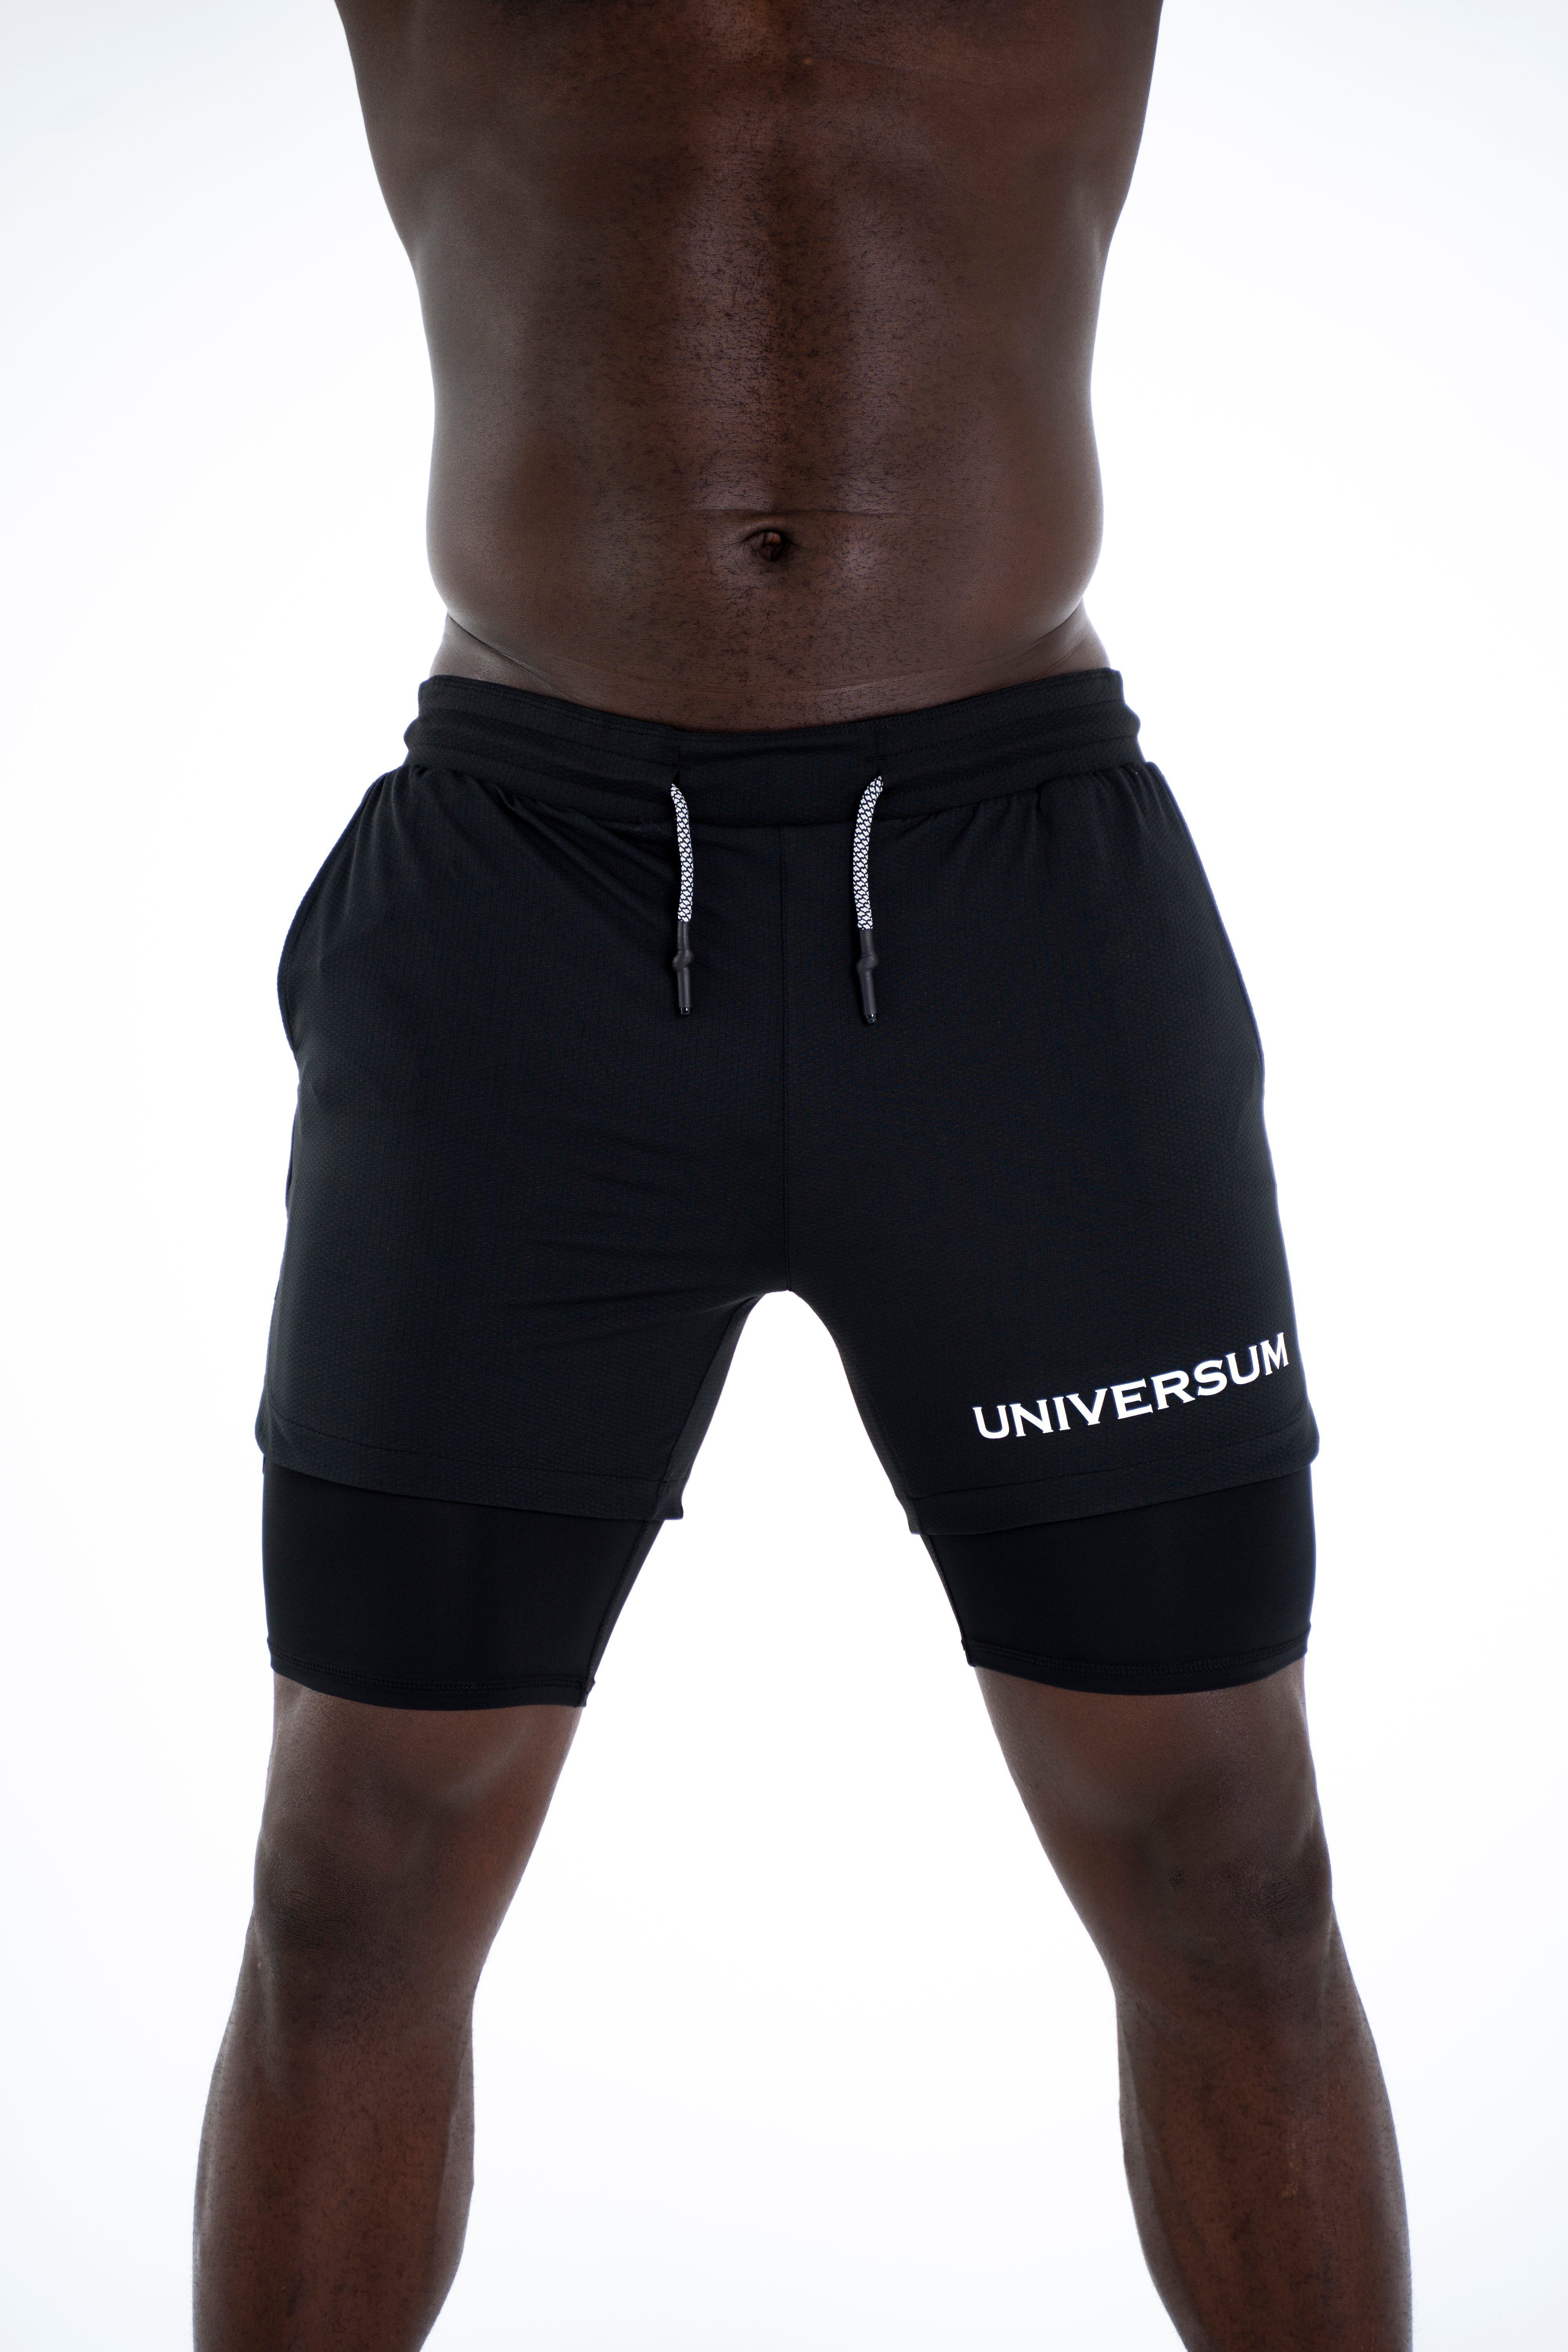 mit Sportwear mit Kurze Handytasche schwarz Sporthose Unterziehhose versteckter funktioneller Hose Universum Shorts